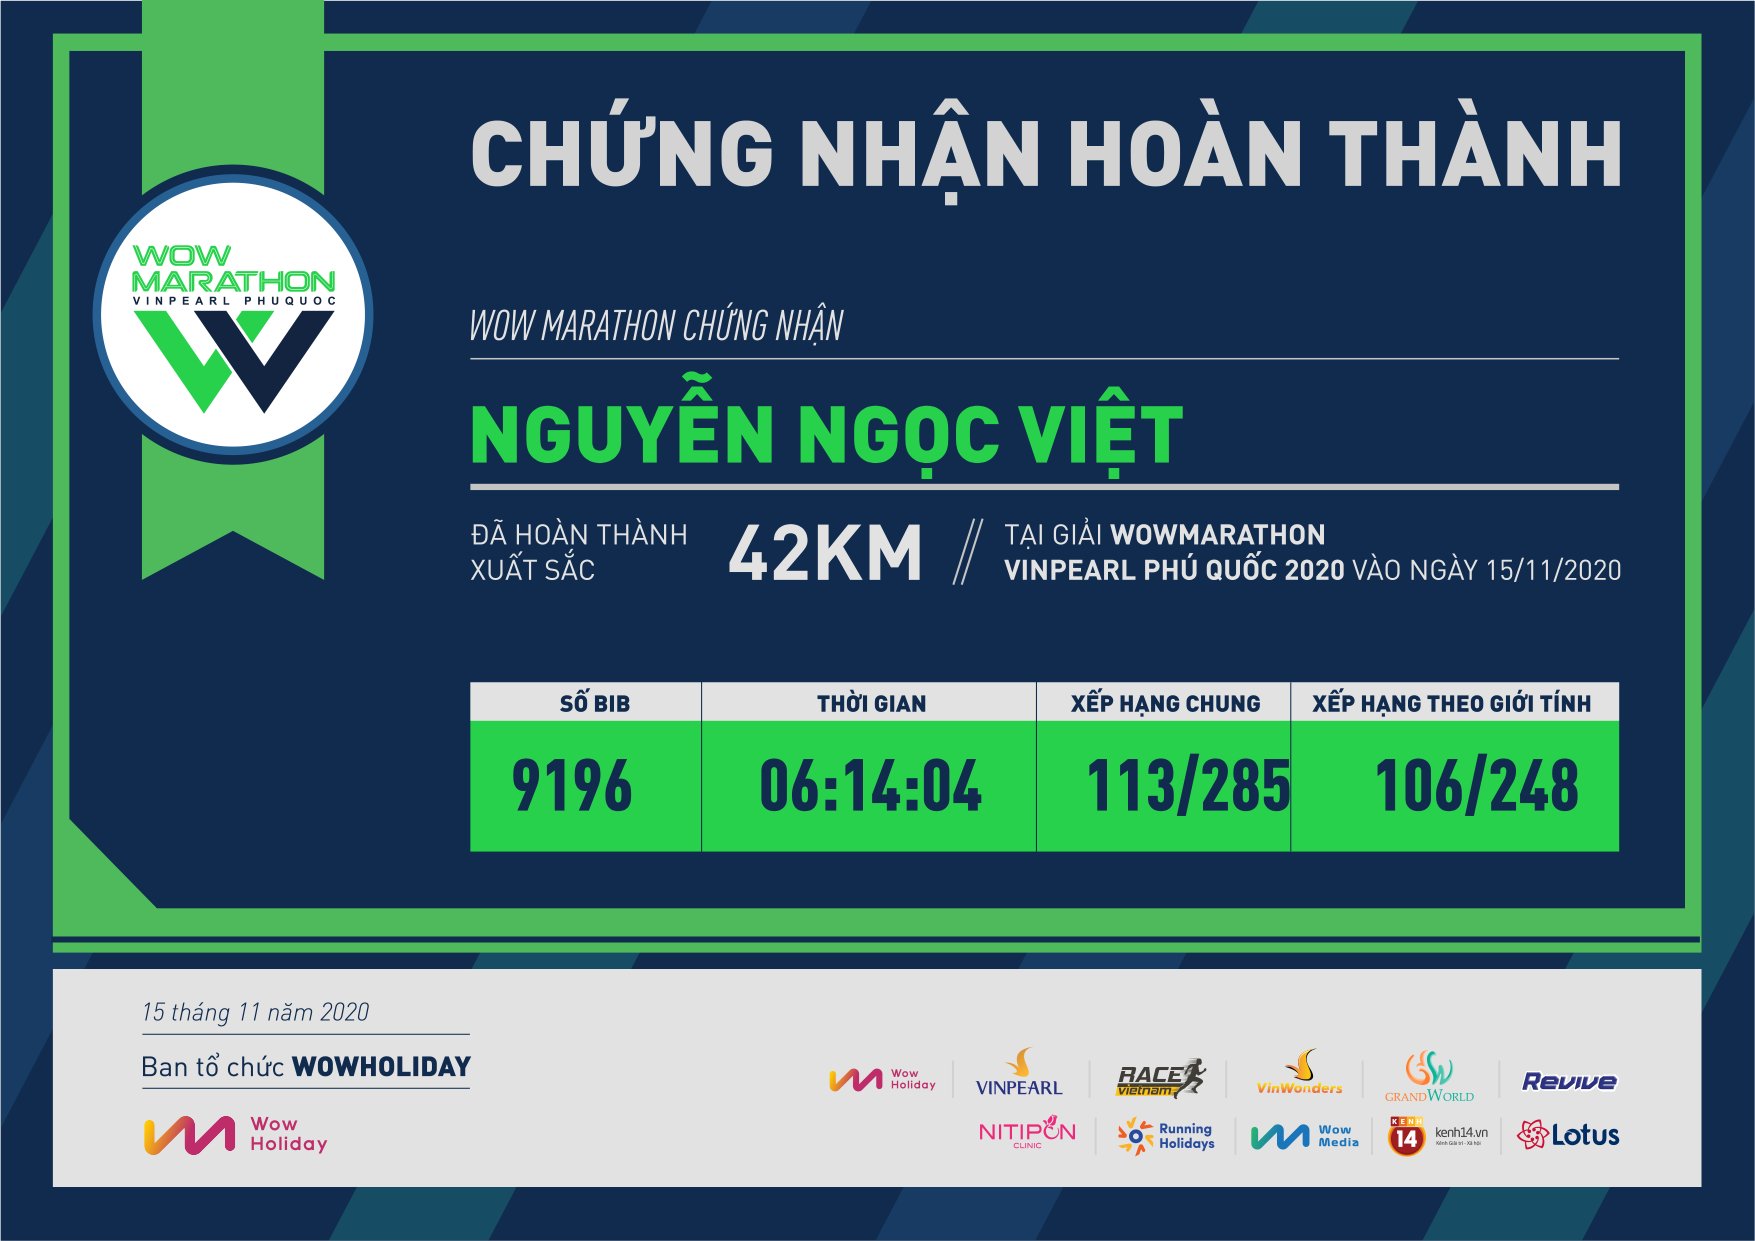 9196 - Nguyễn Ngọc Việt